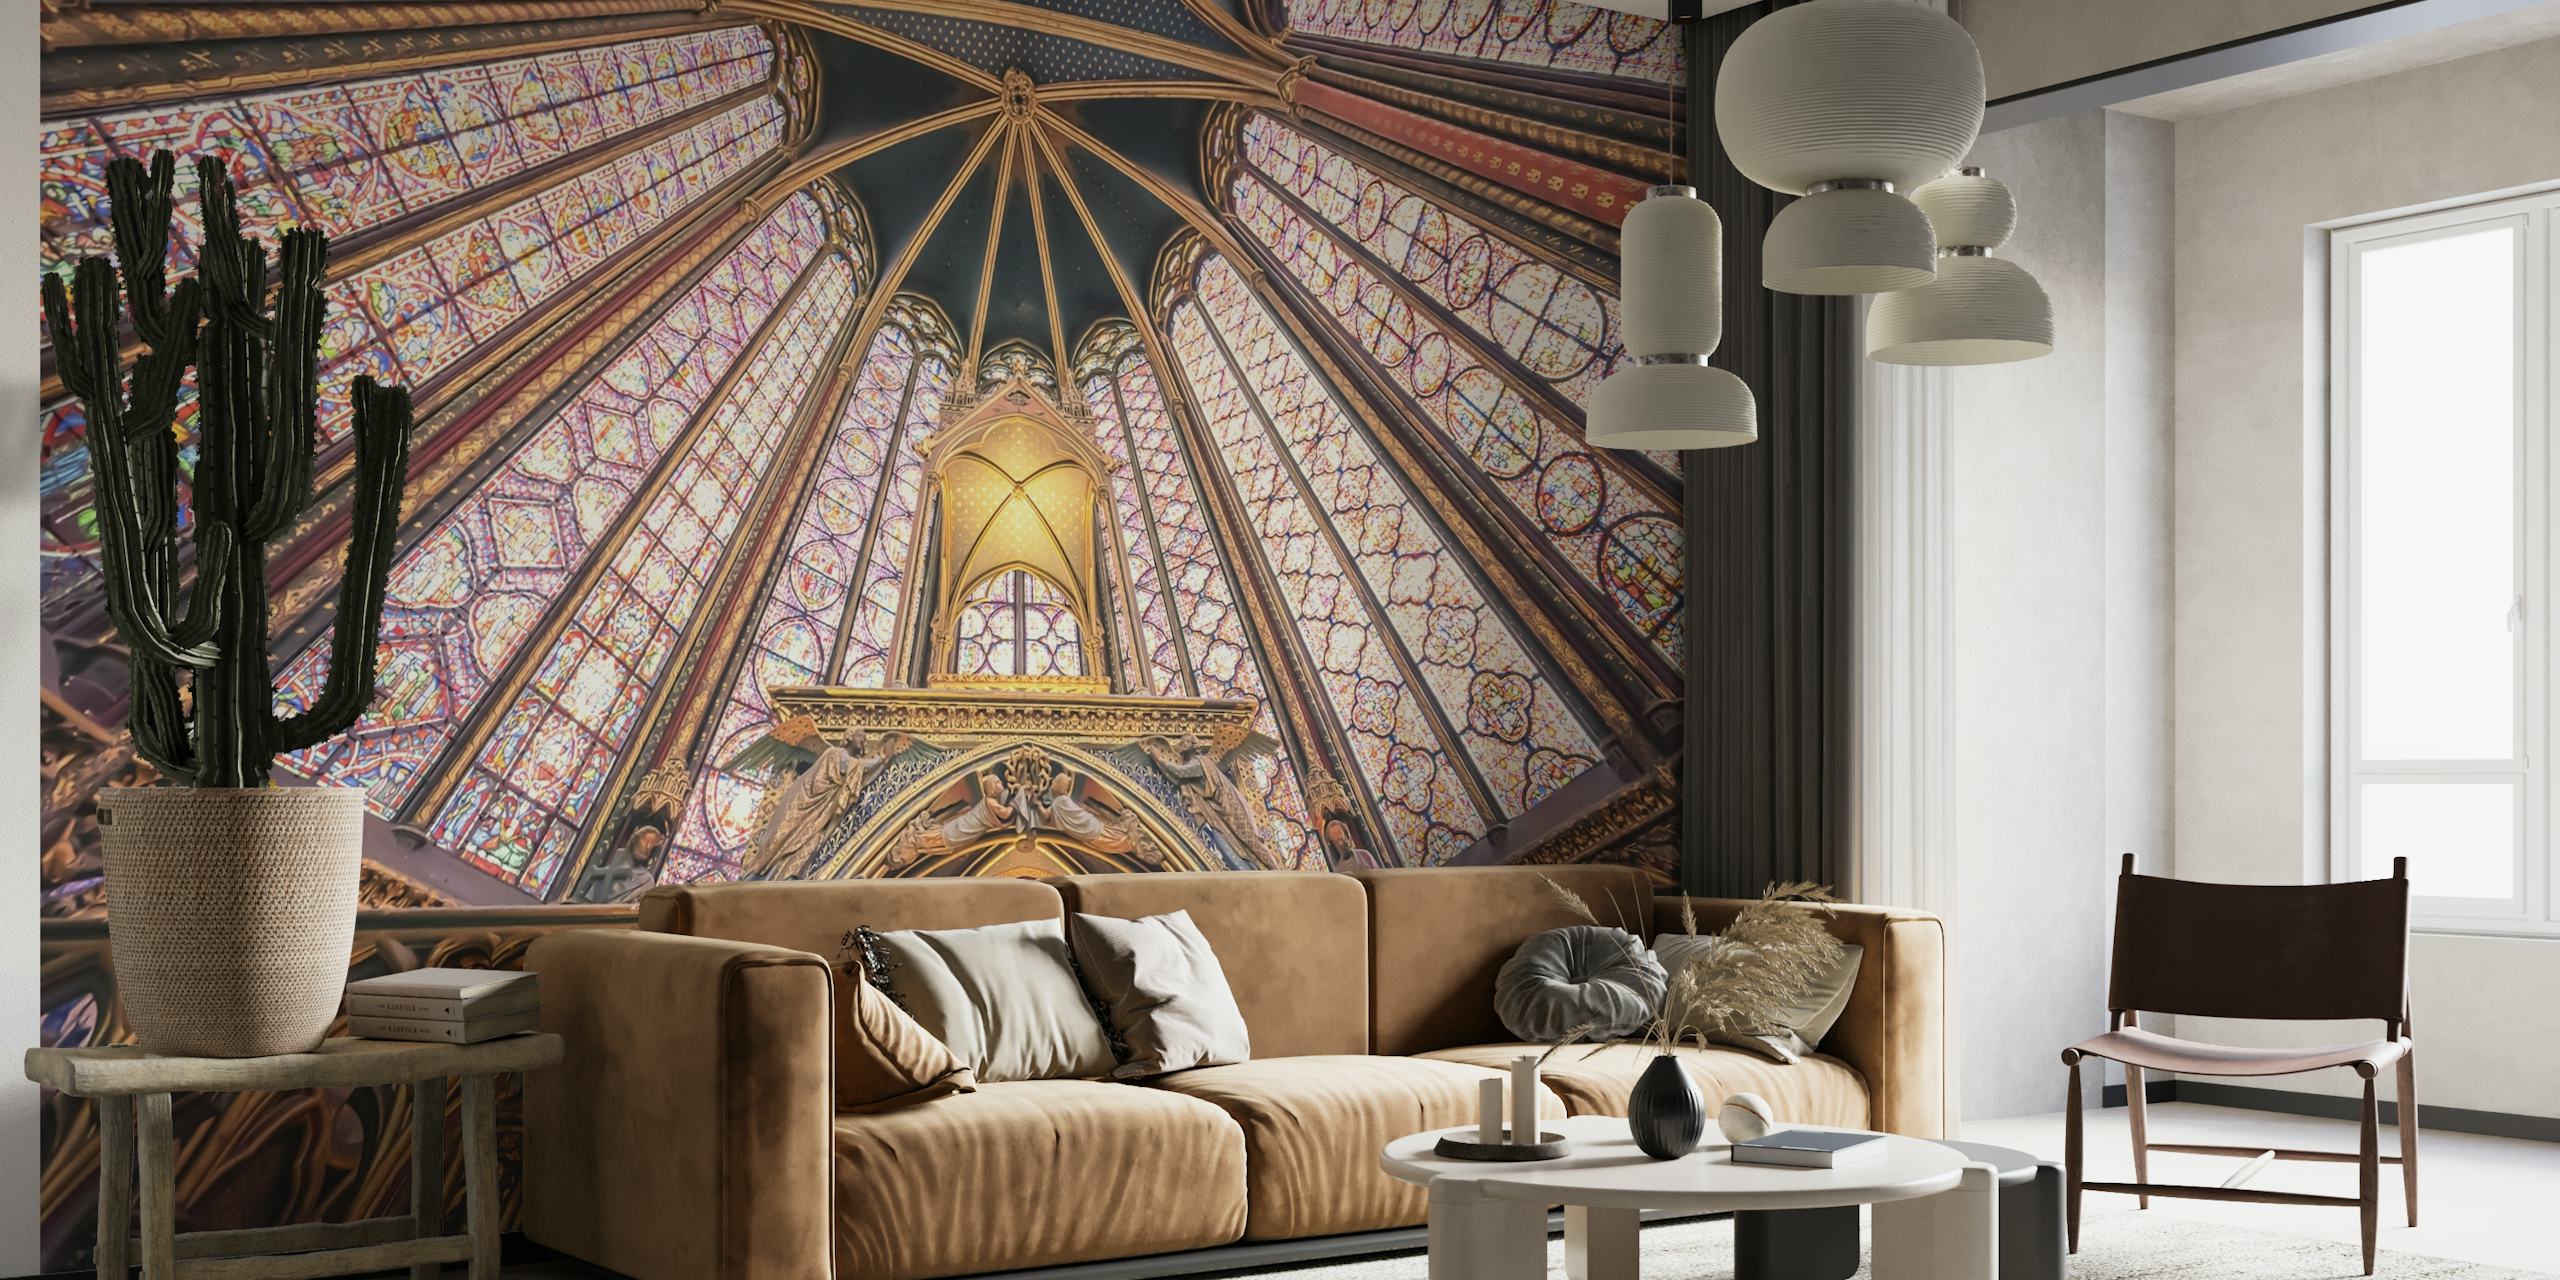 El mural de arquitectura gótica de la Sainte-Chapelle que presenta los vibrantes patrones y tonos del icónico techo.